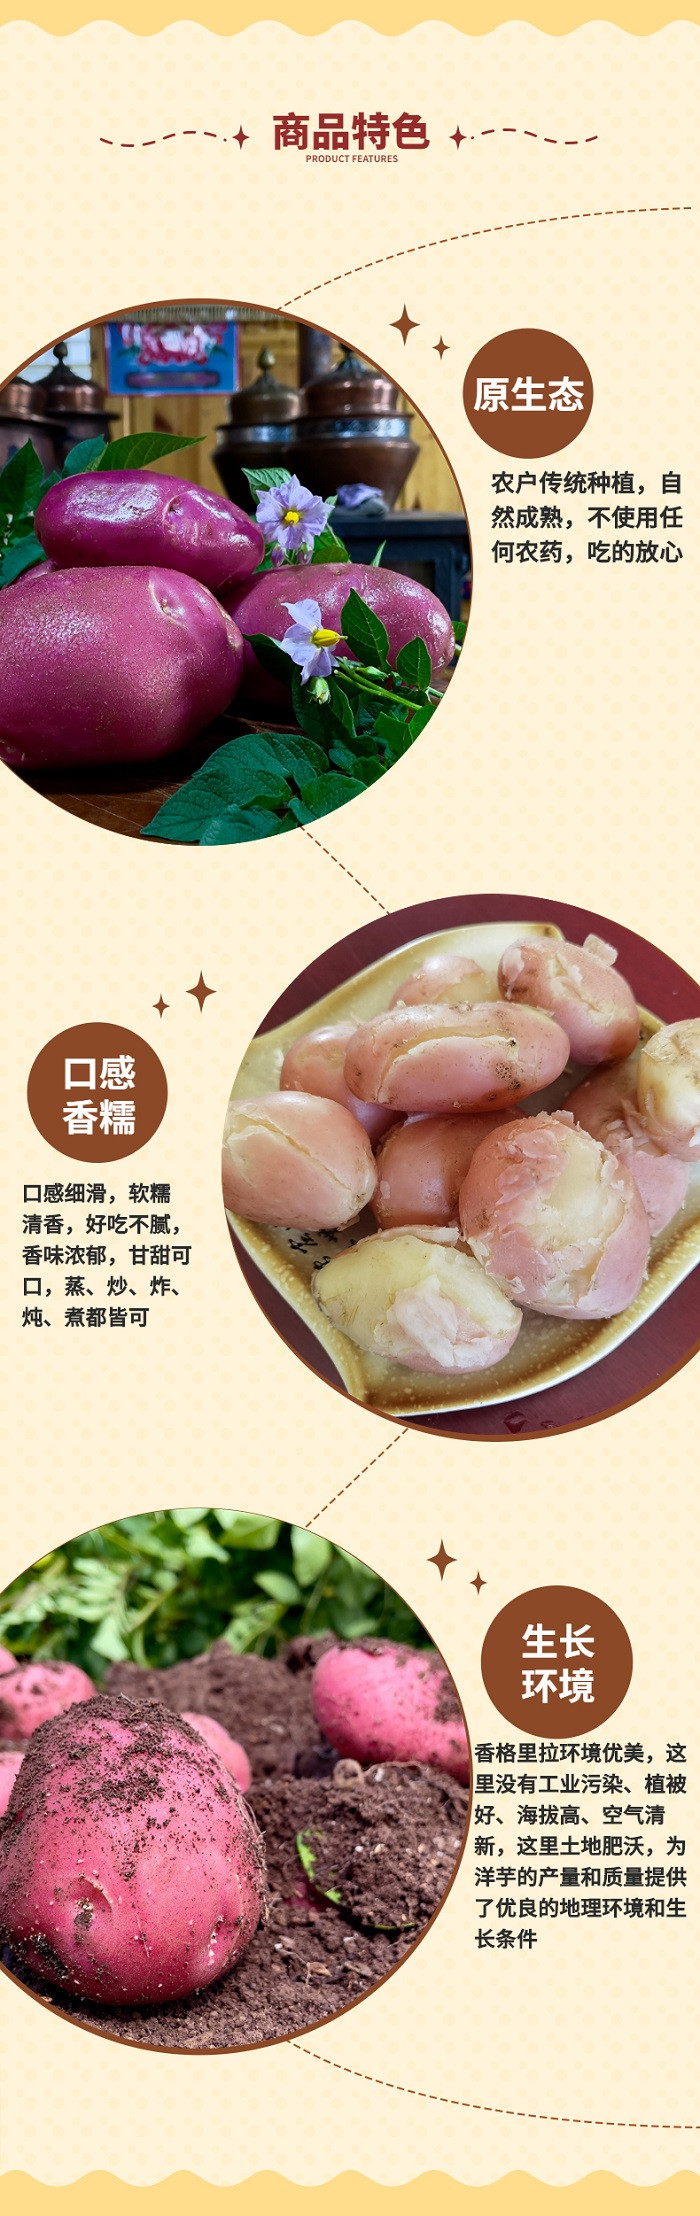 农家自产 【云南香格里拉】尼西高原红皮土豆  2.5kg